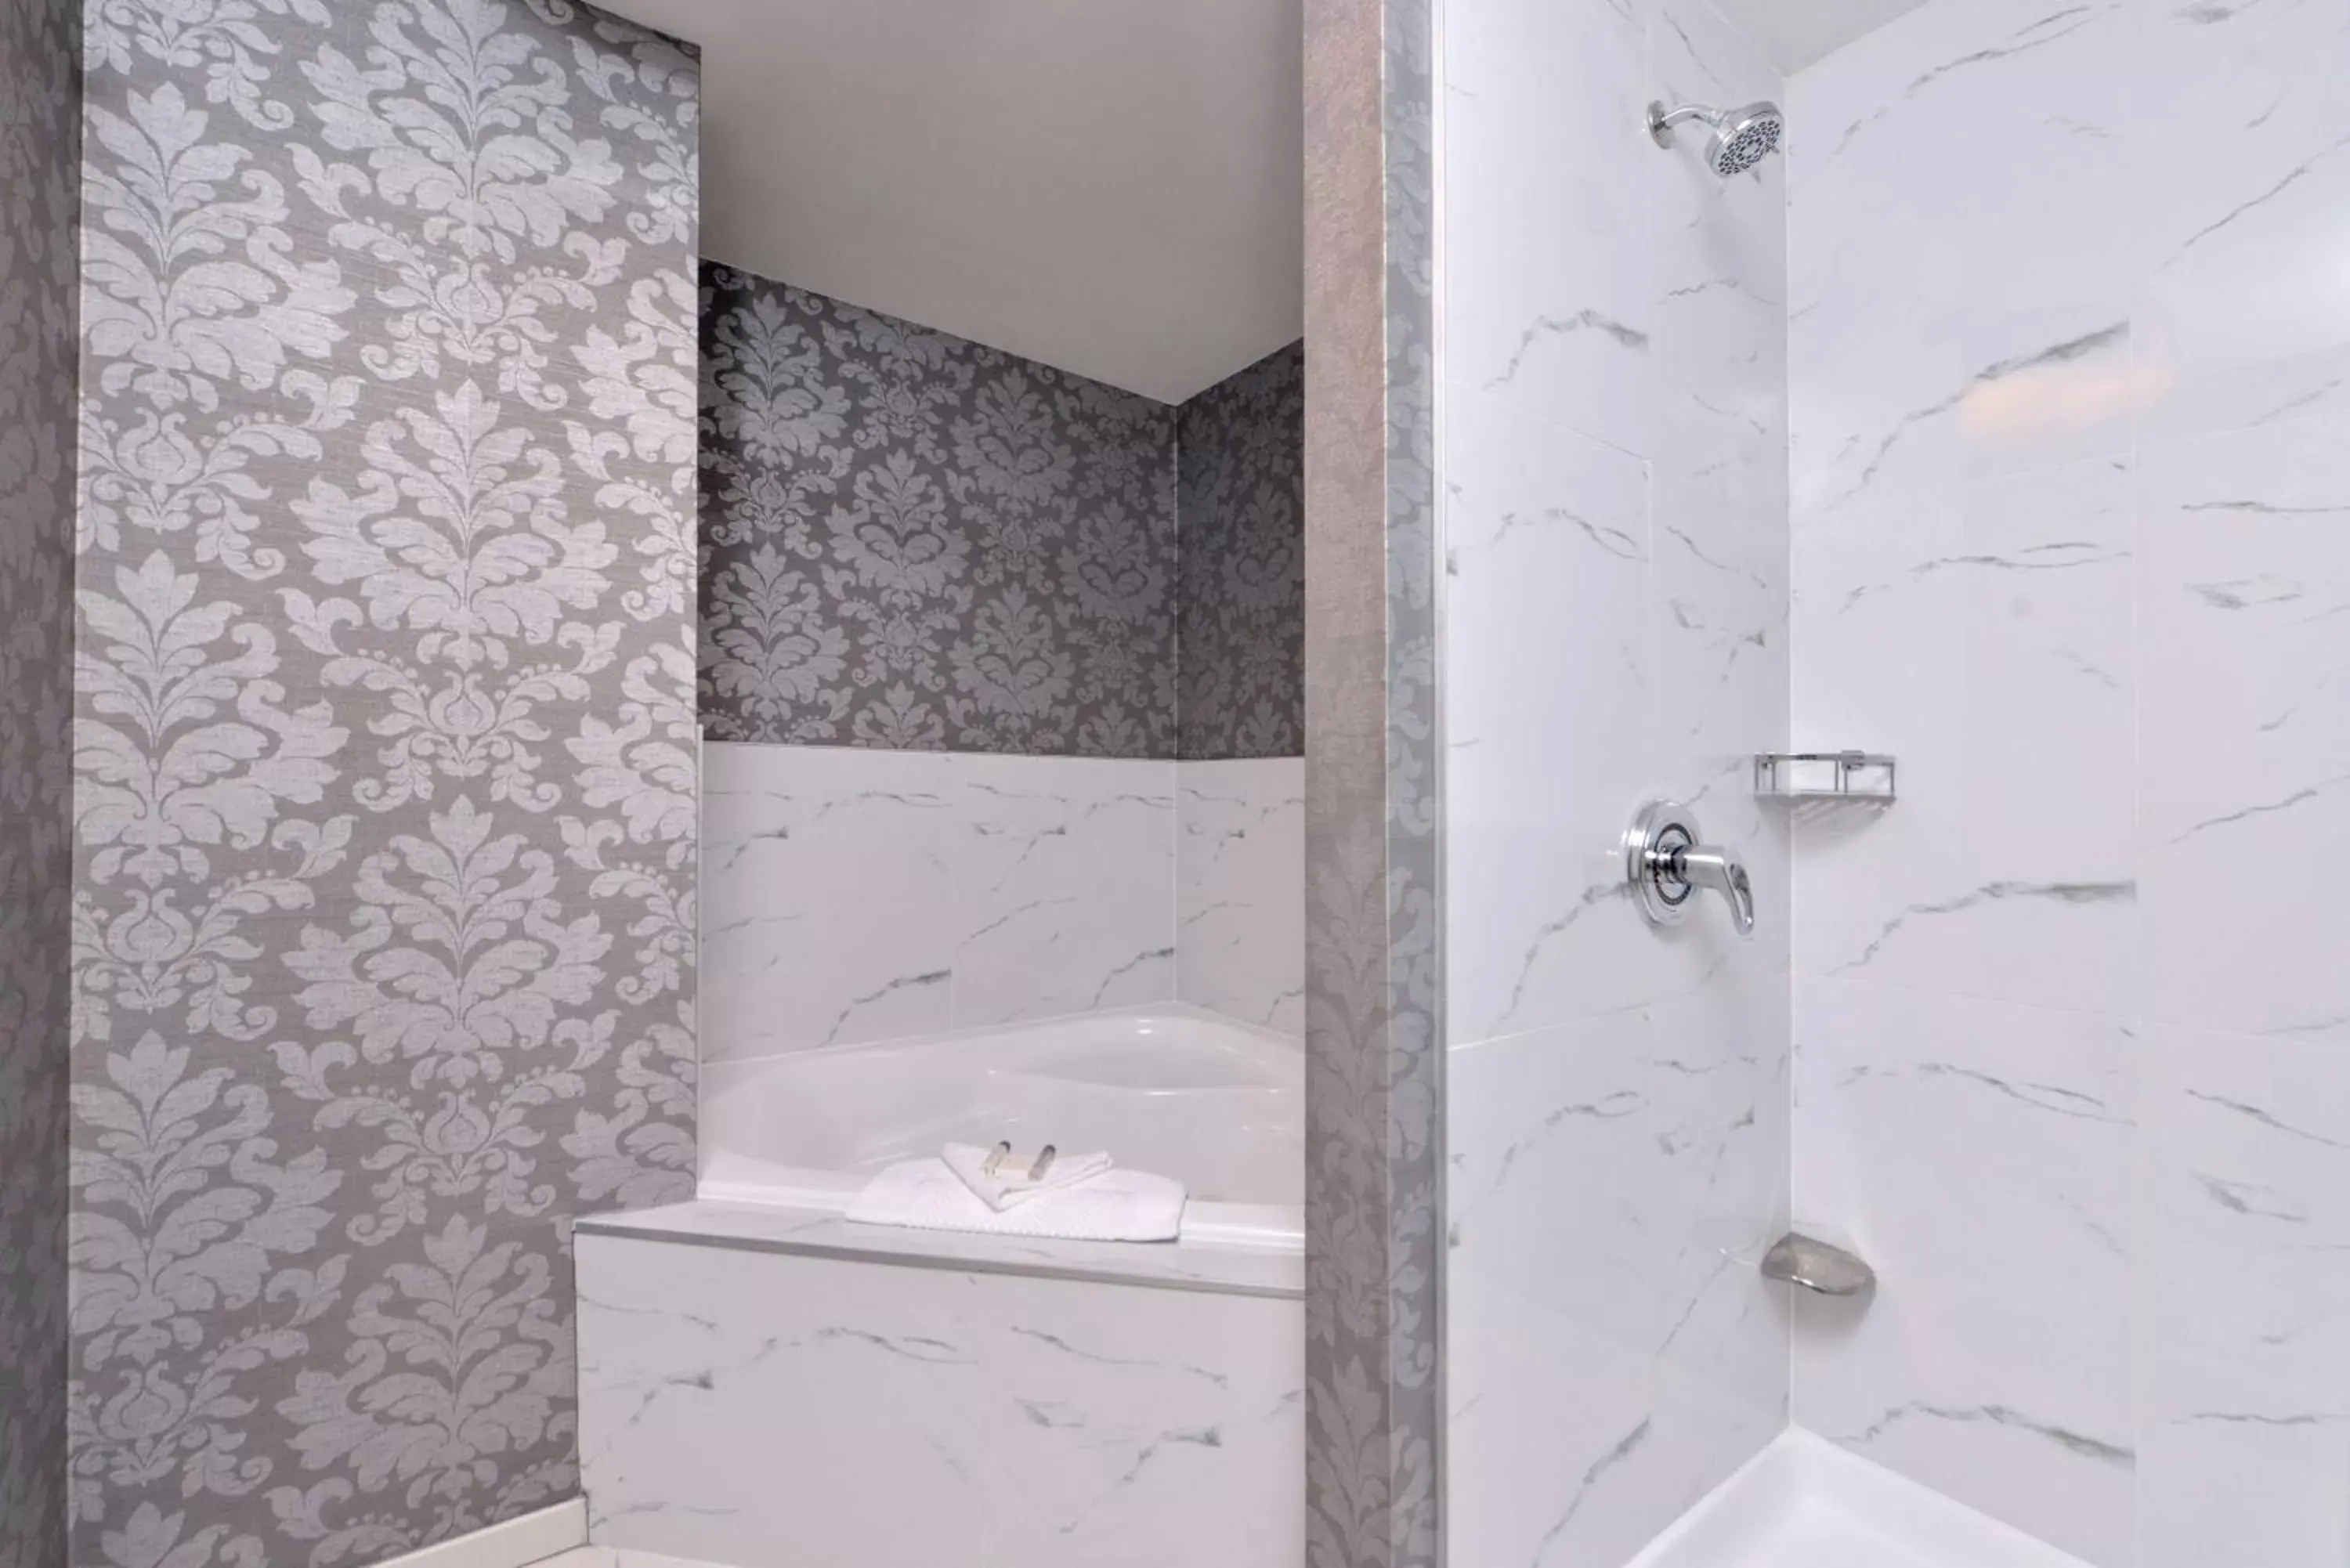 Bathroom in DoubleTree by Hilton Utica